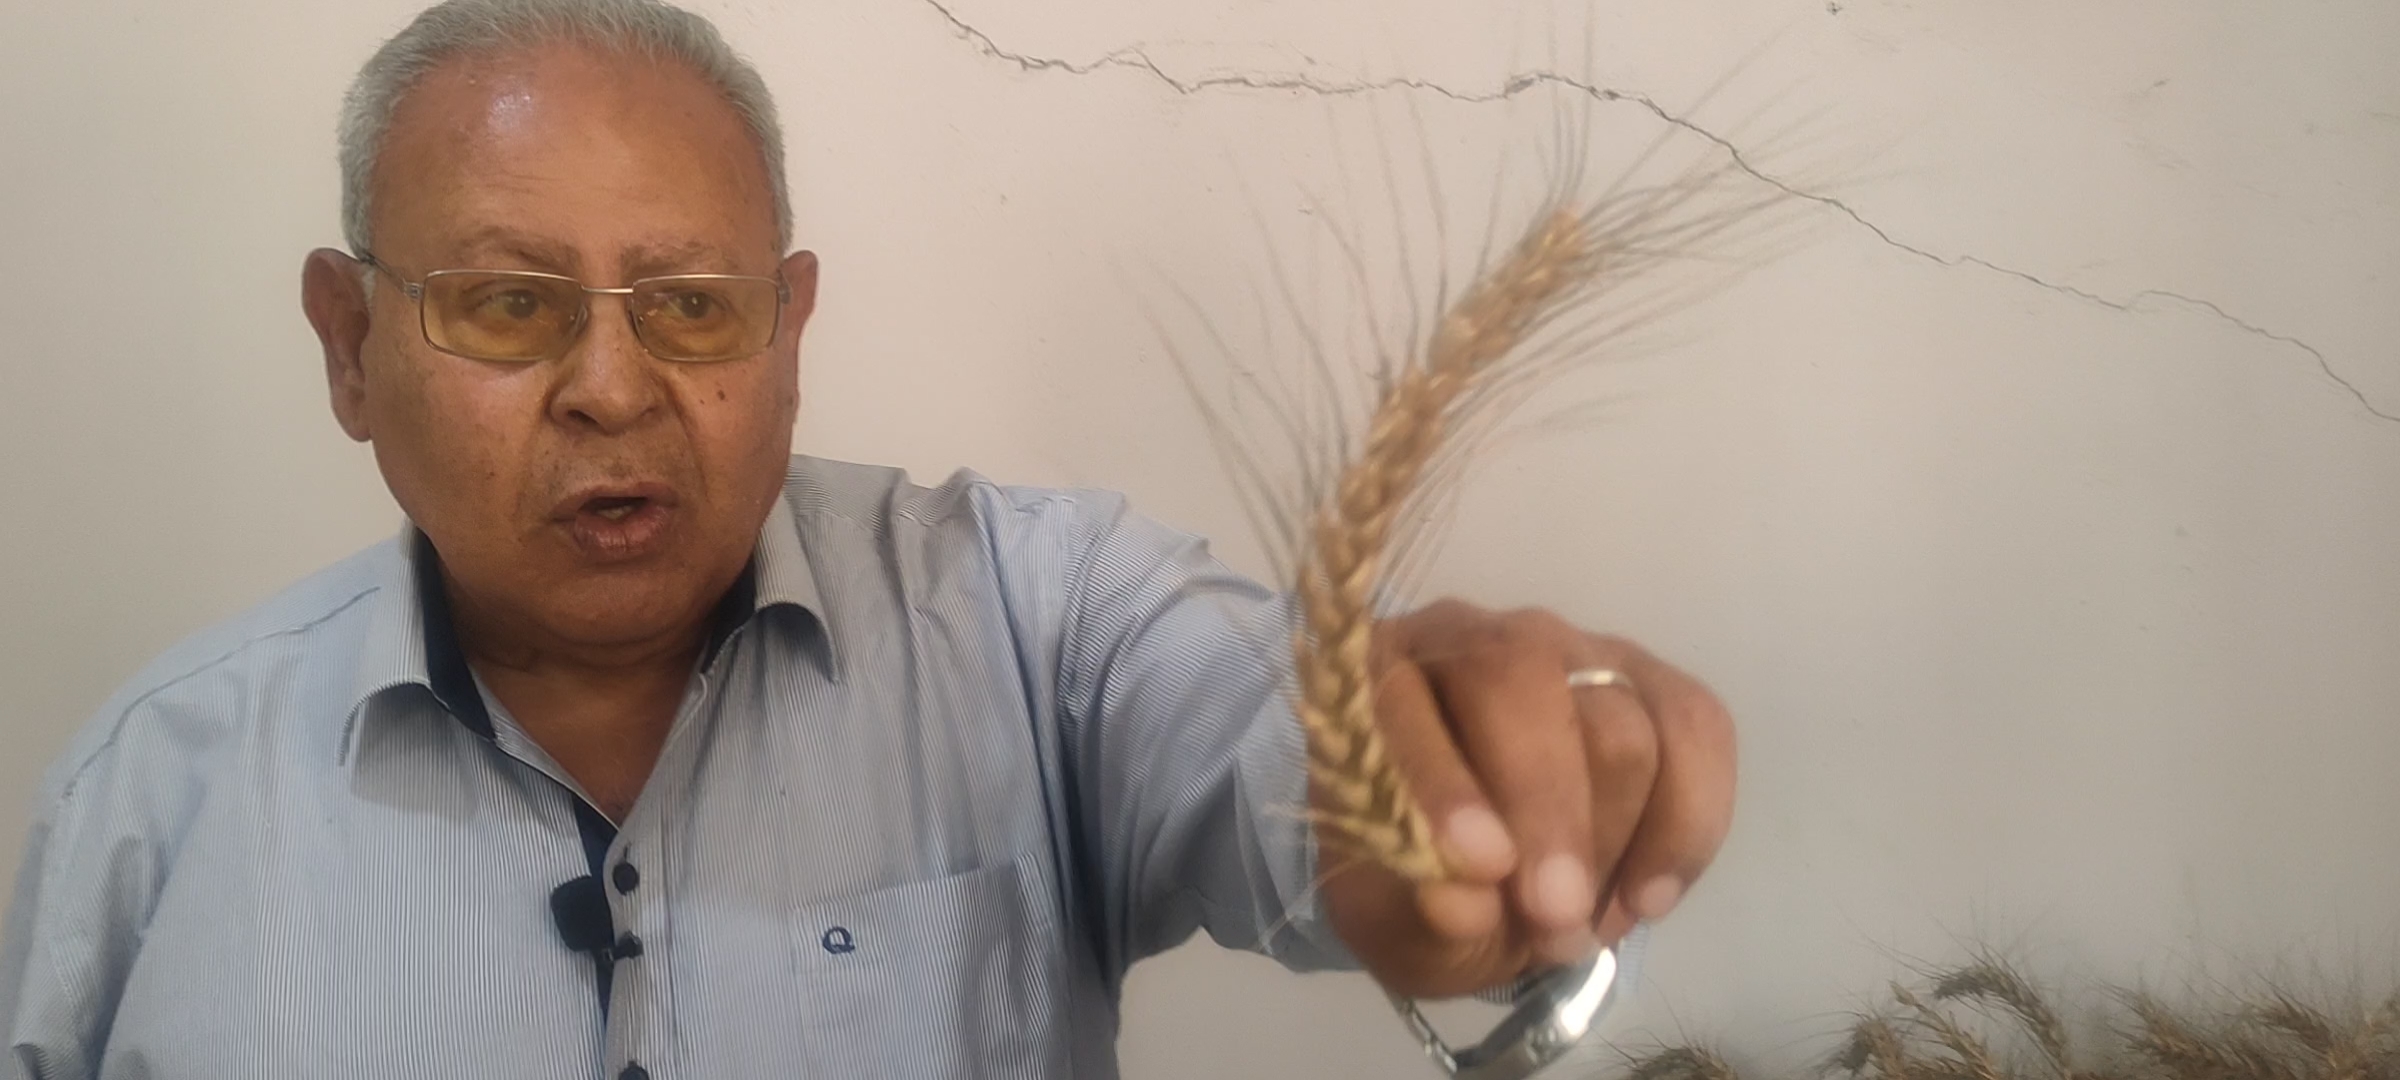 أستاذ زراعة الزقازيق ينجح في استباط طفرات من القمح مقاومة عالية للملوحة (4)